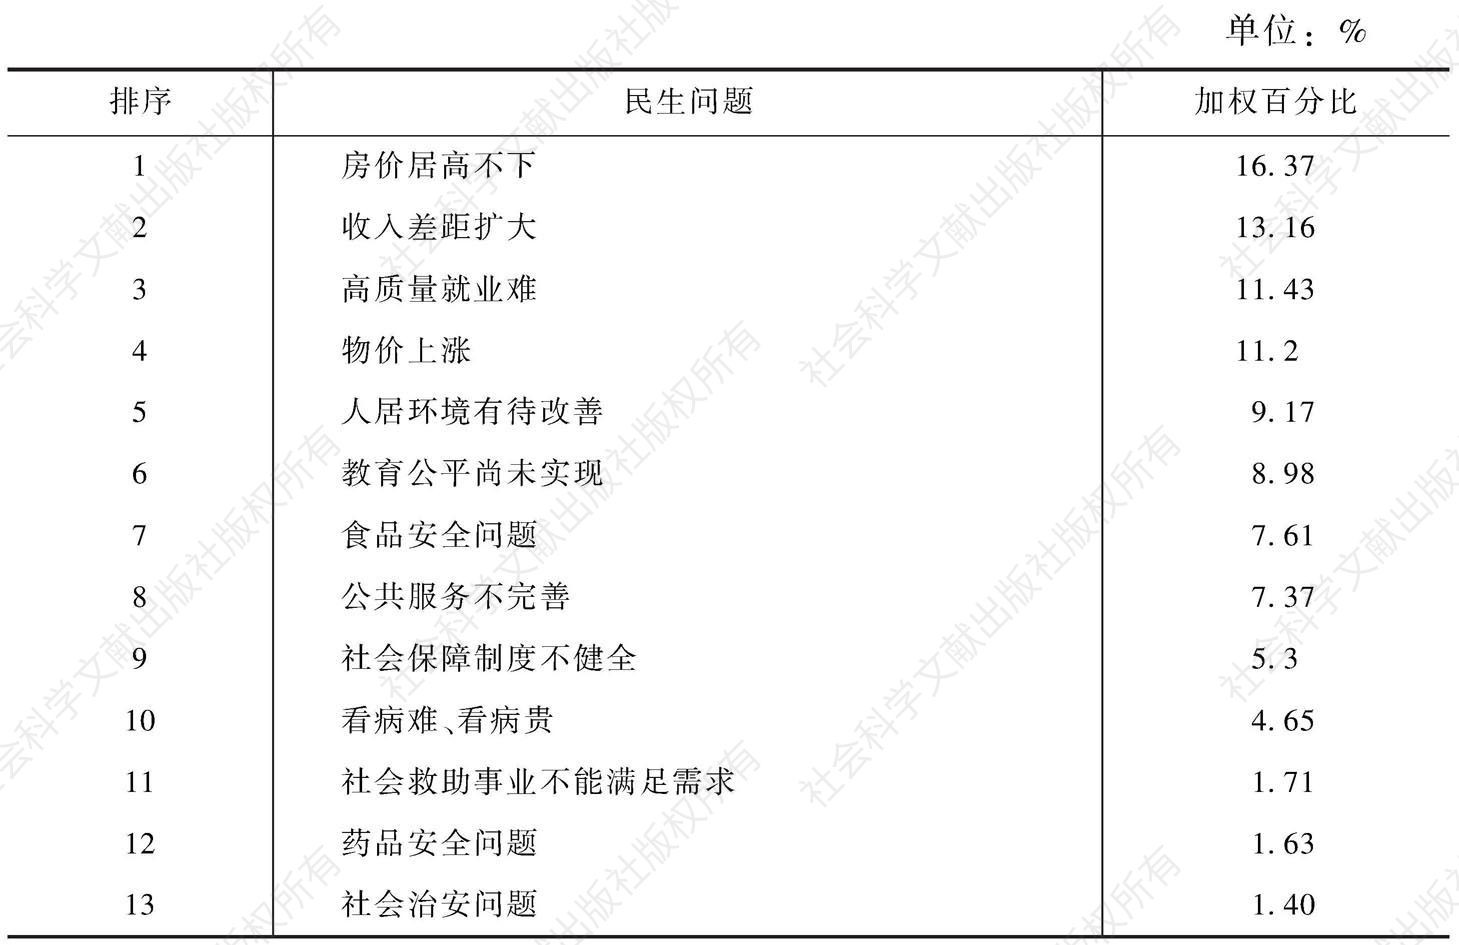 表7 专家认为今后一段时间黑龙江省主要的民生问题排序